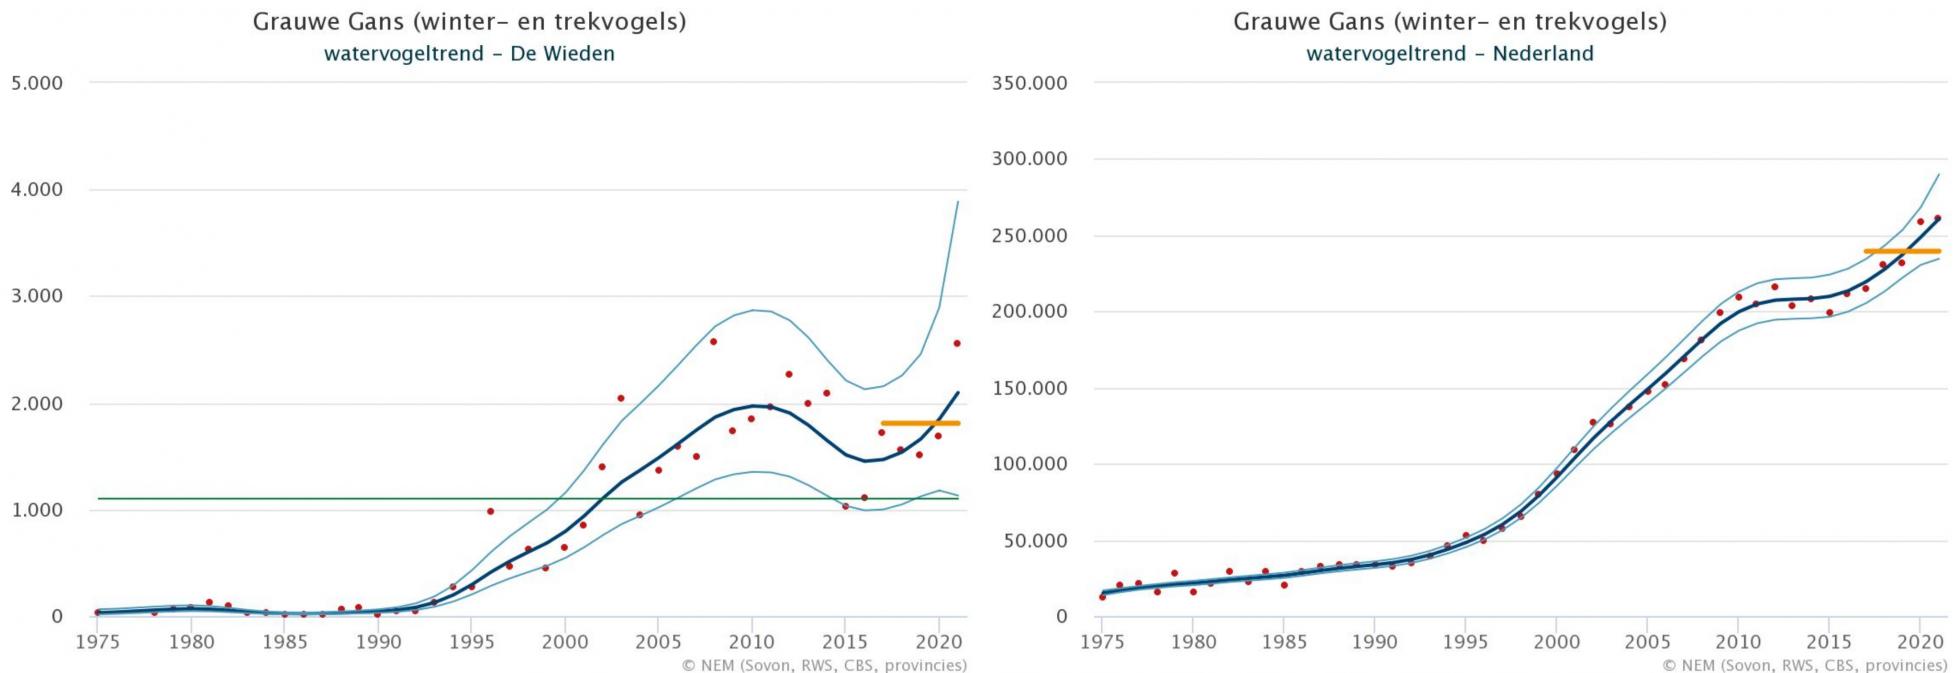 Figuur 2, trend van Grauwe Gans in de Wieden (links) en landelijk (rechts).